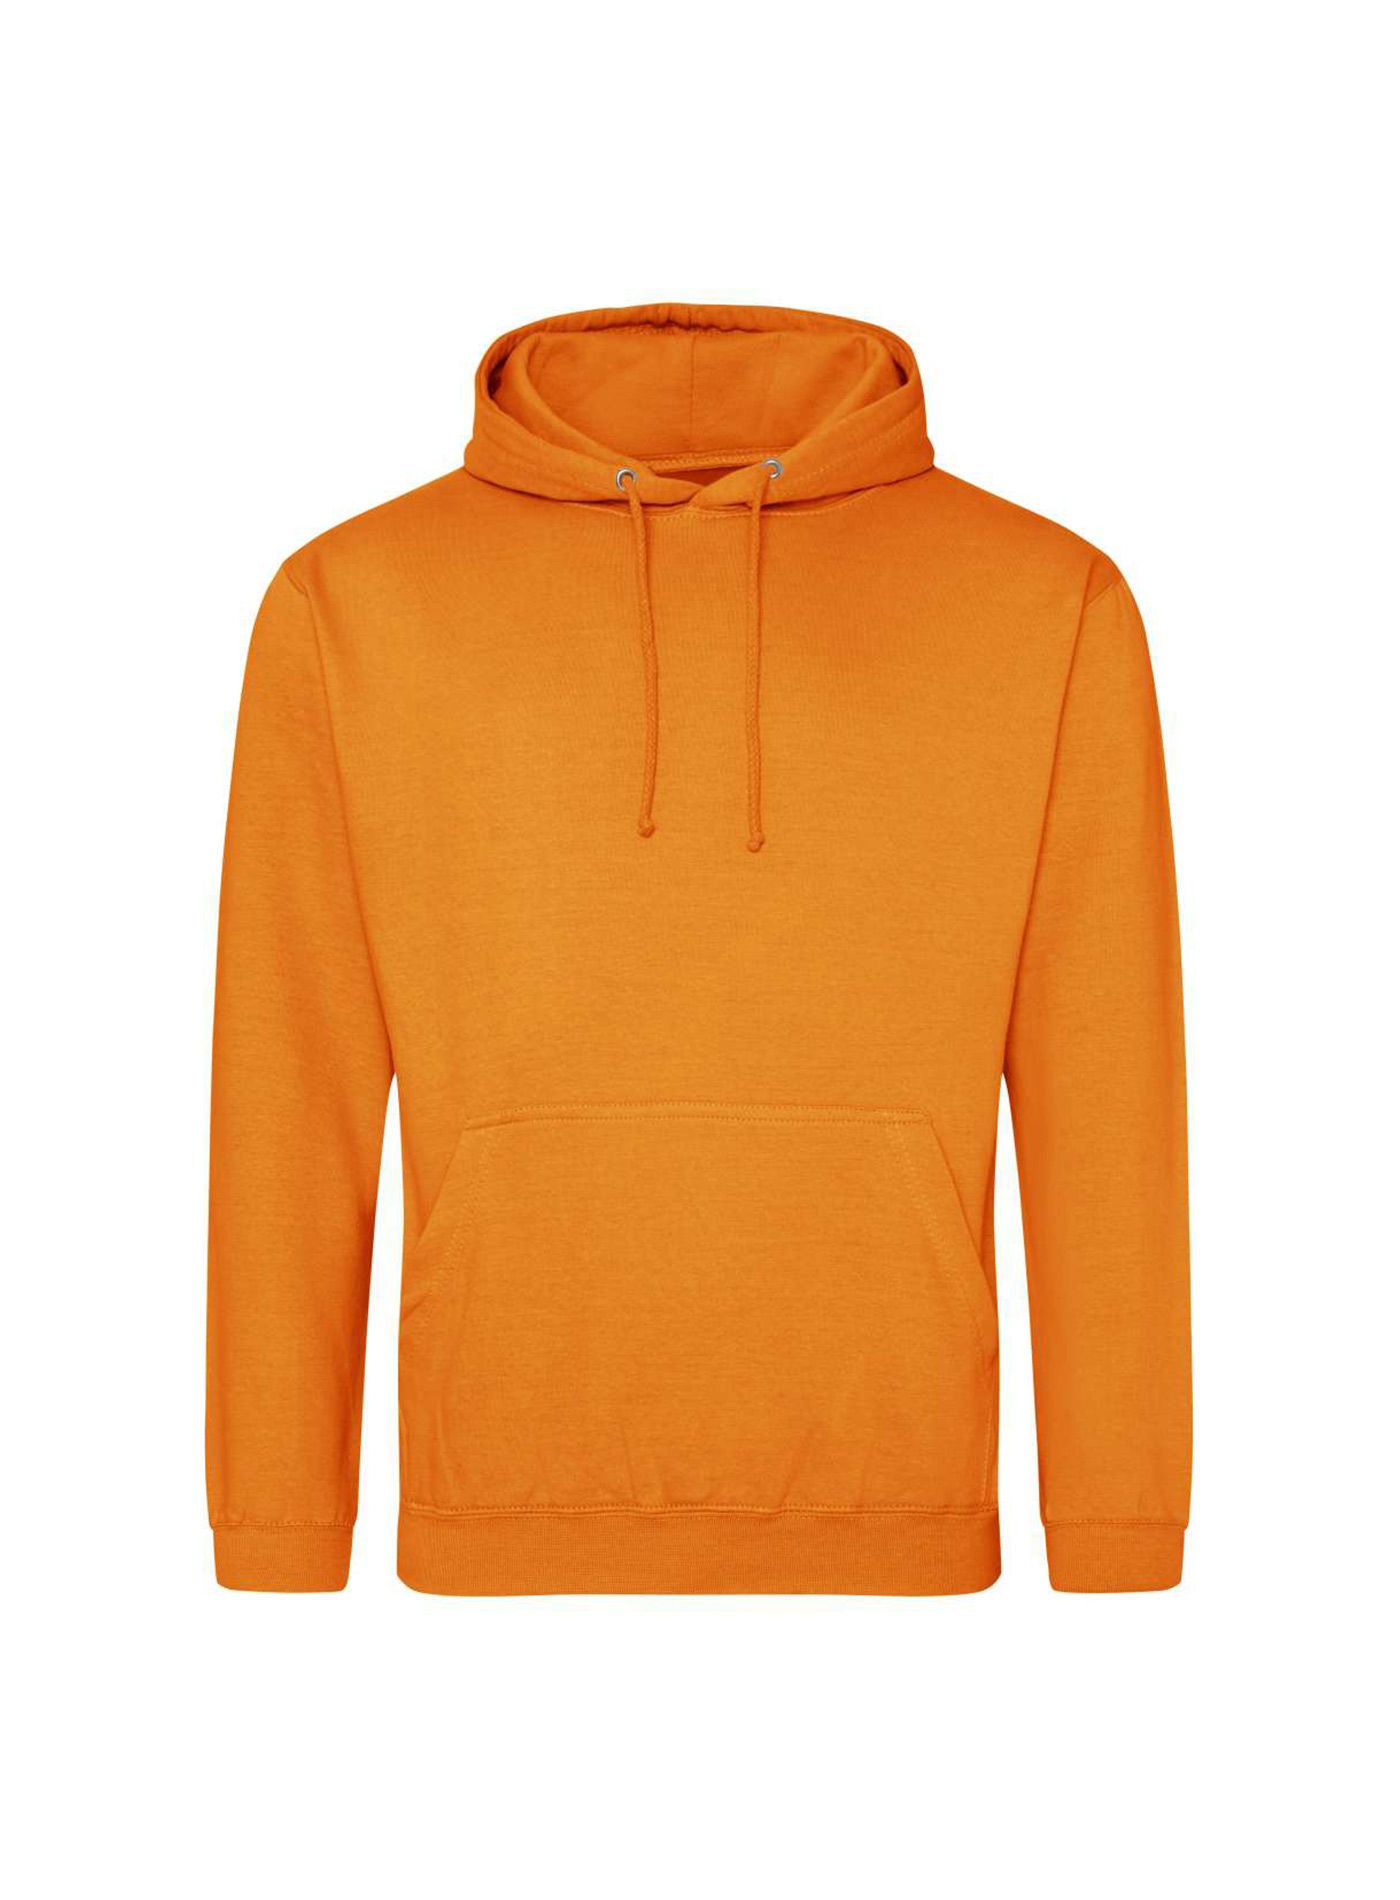 Mikina s kapucí unisex Just Hoods - Neonová oranžová XS